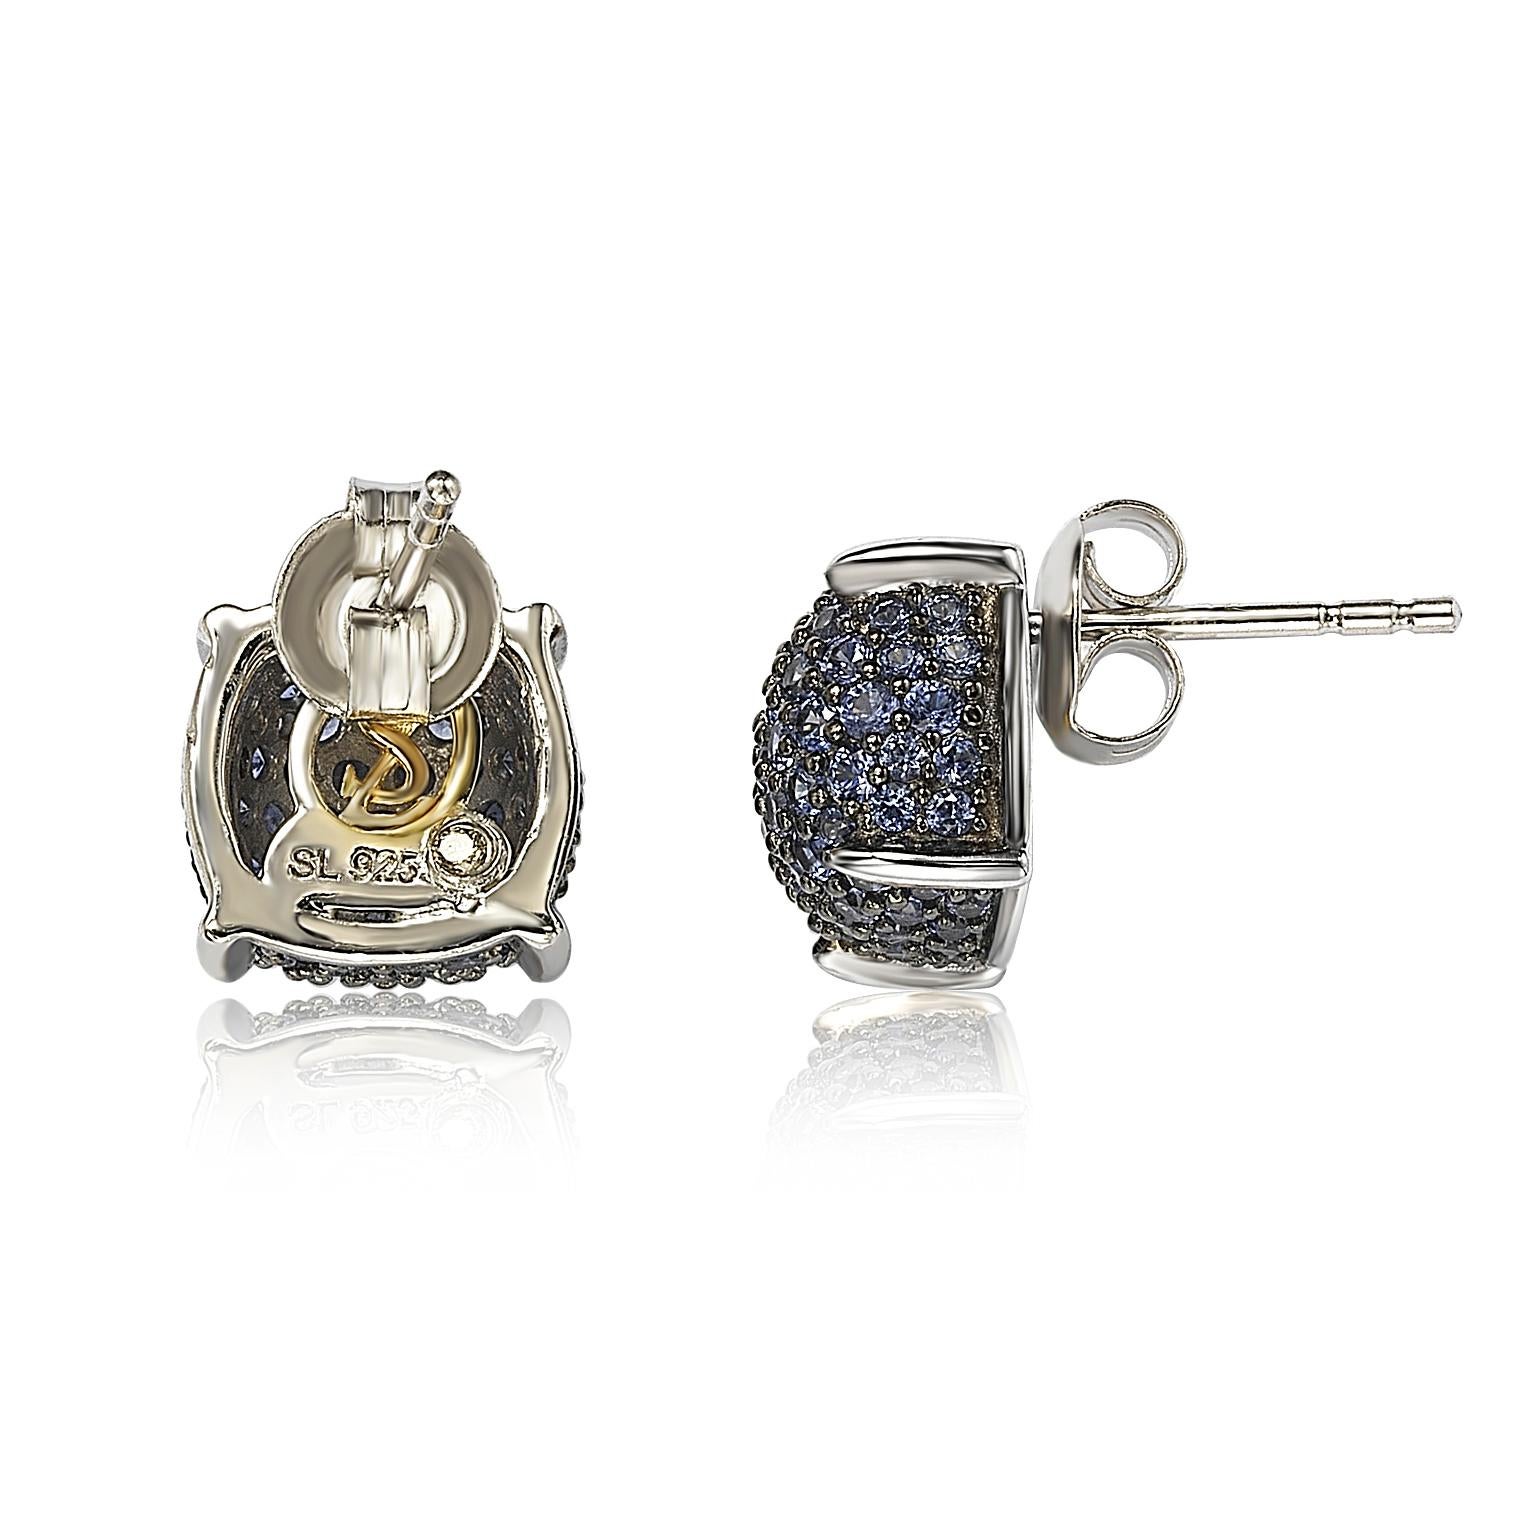 levian sapphire earrings